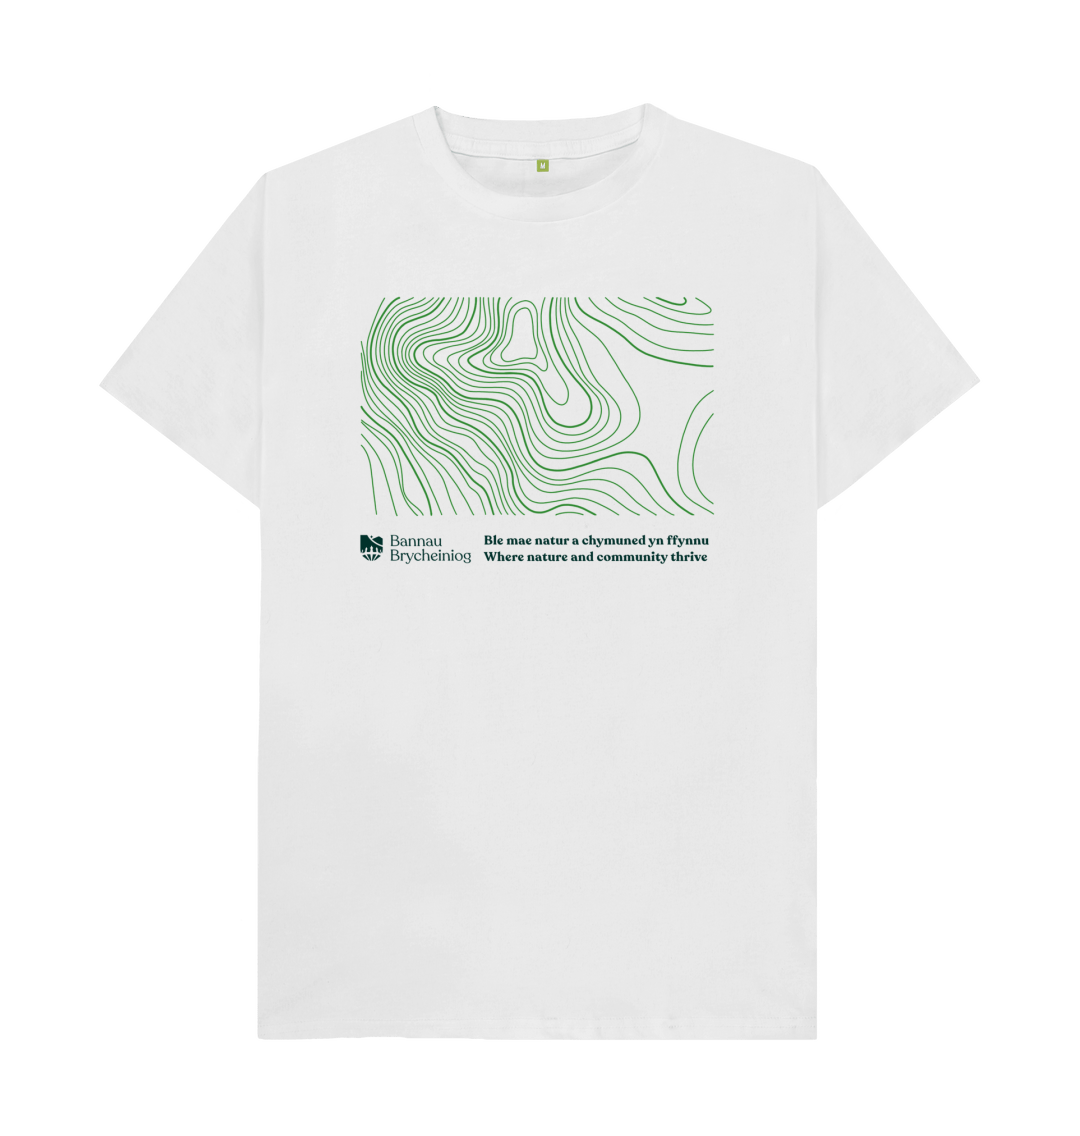 Bannau Brycheiniog National Park T-shirt